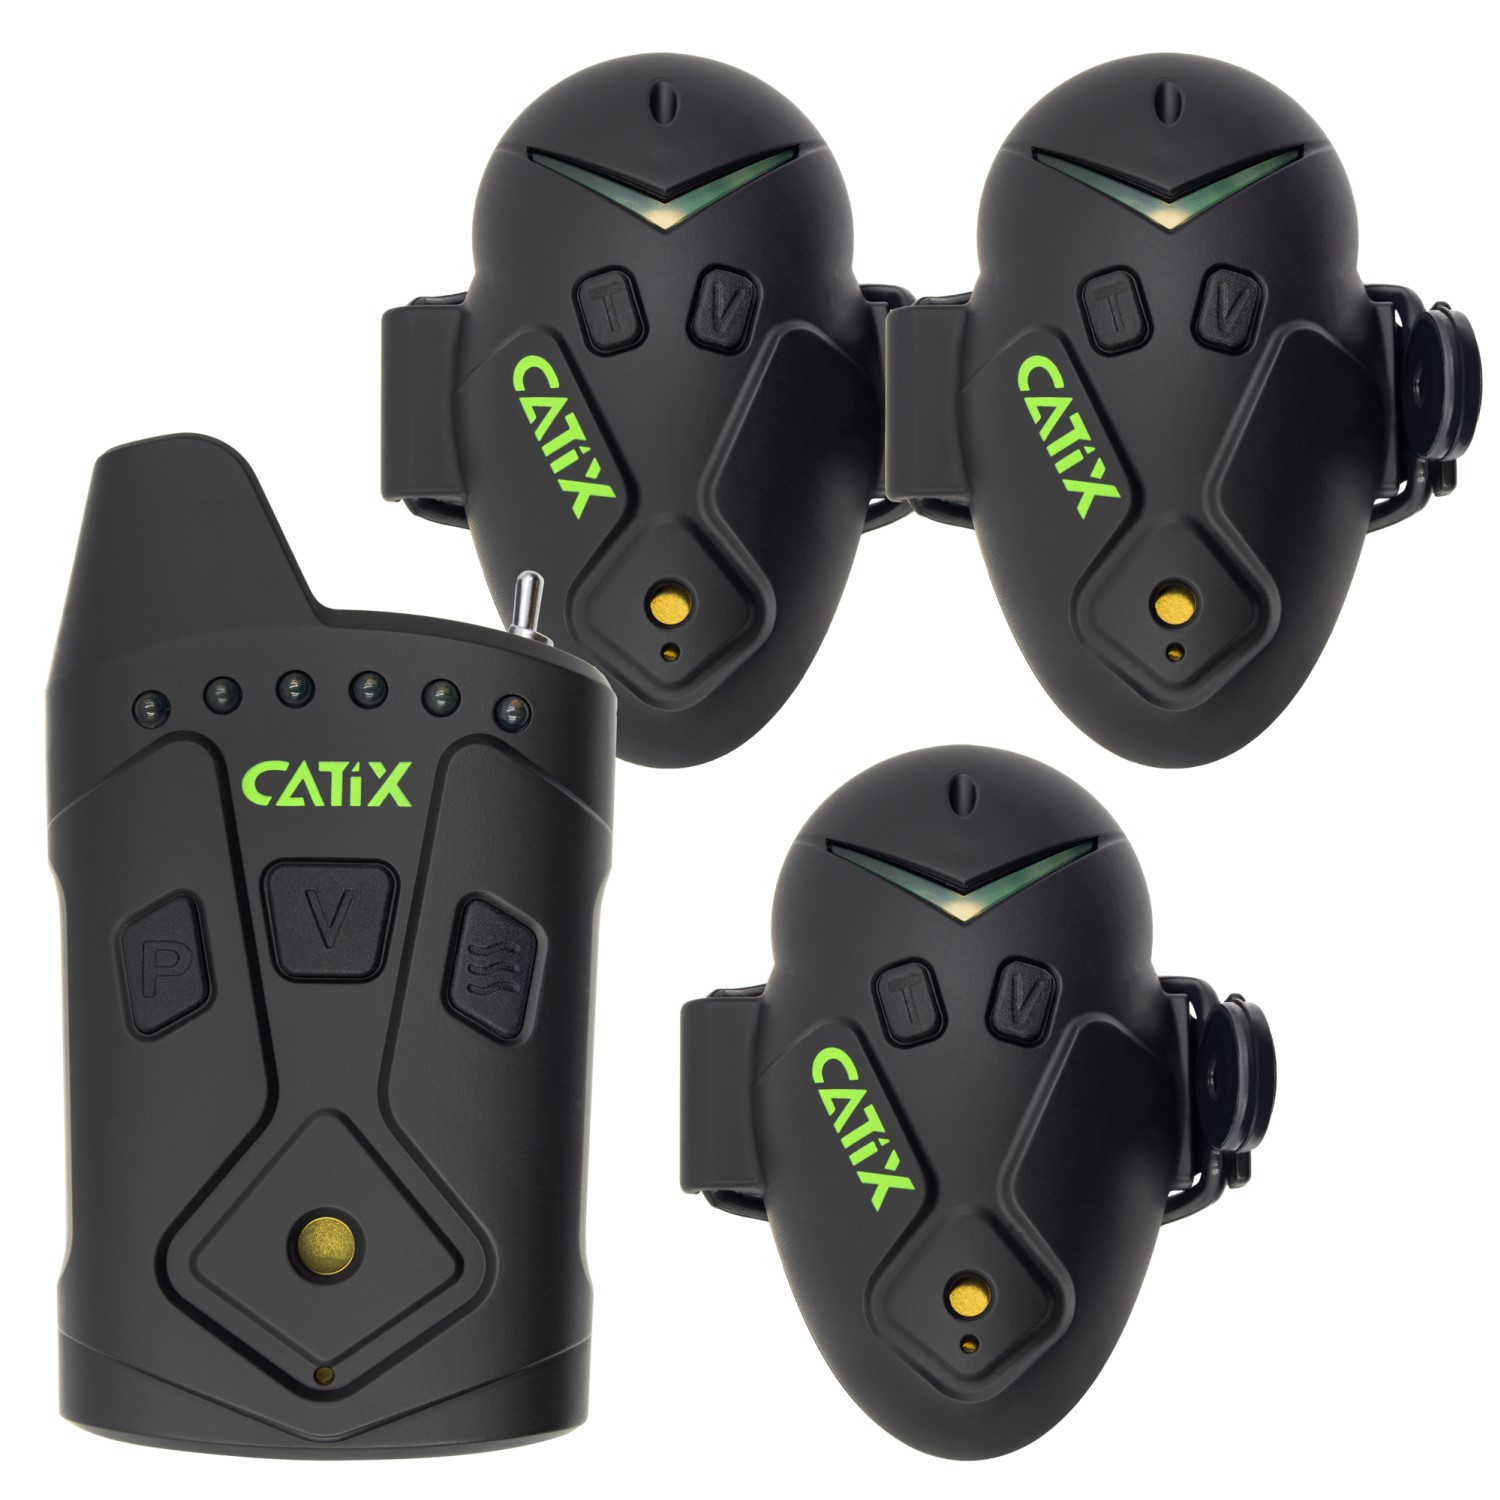 Catix XP8 Meerval Beetverklikkers set van 3 in koffer | Draadloos |